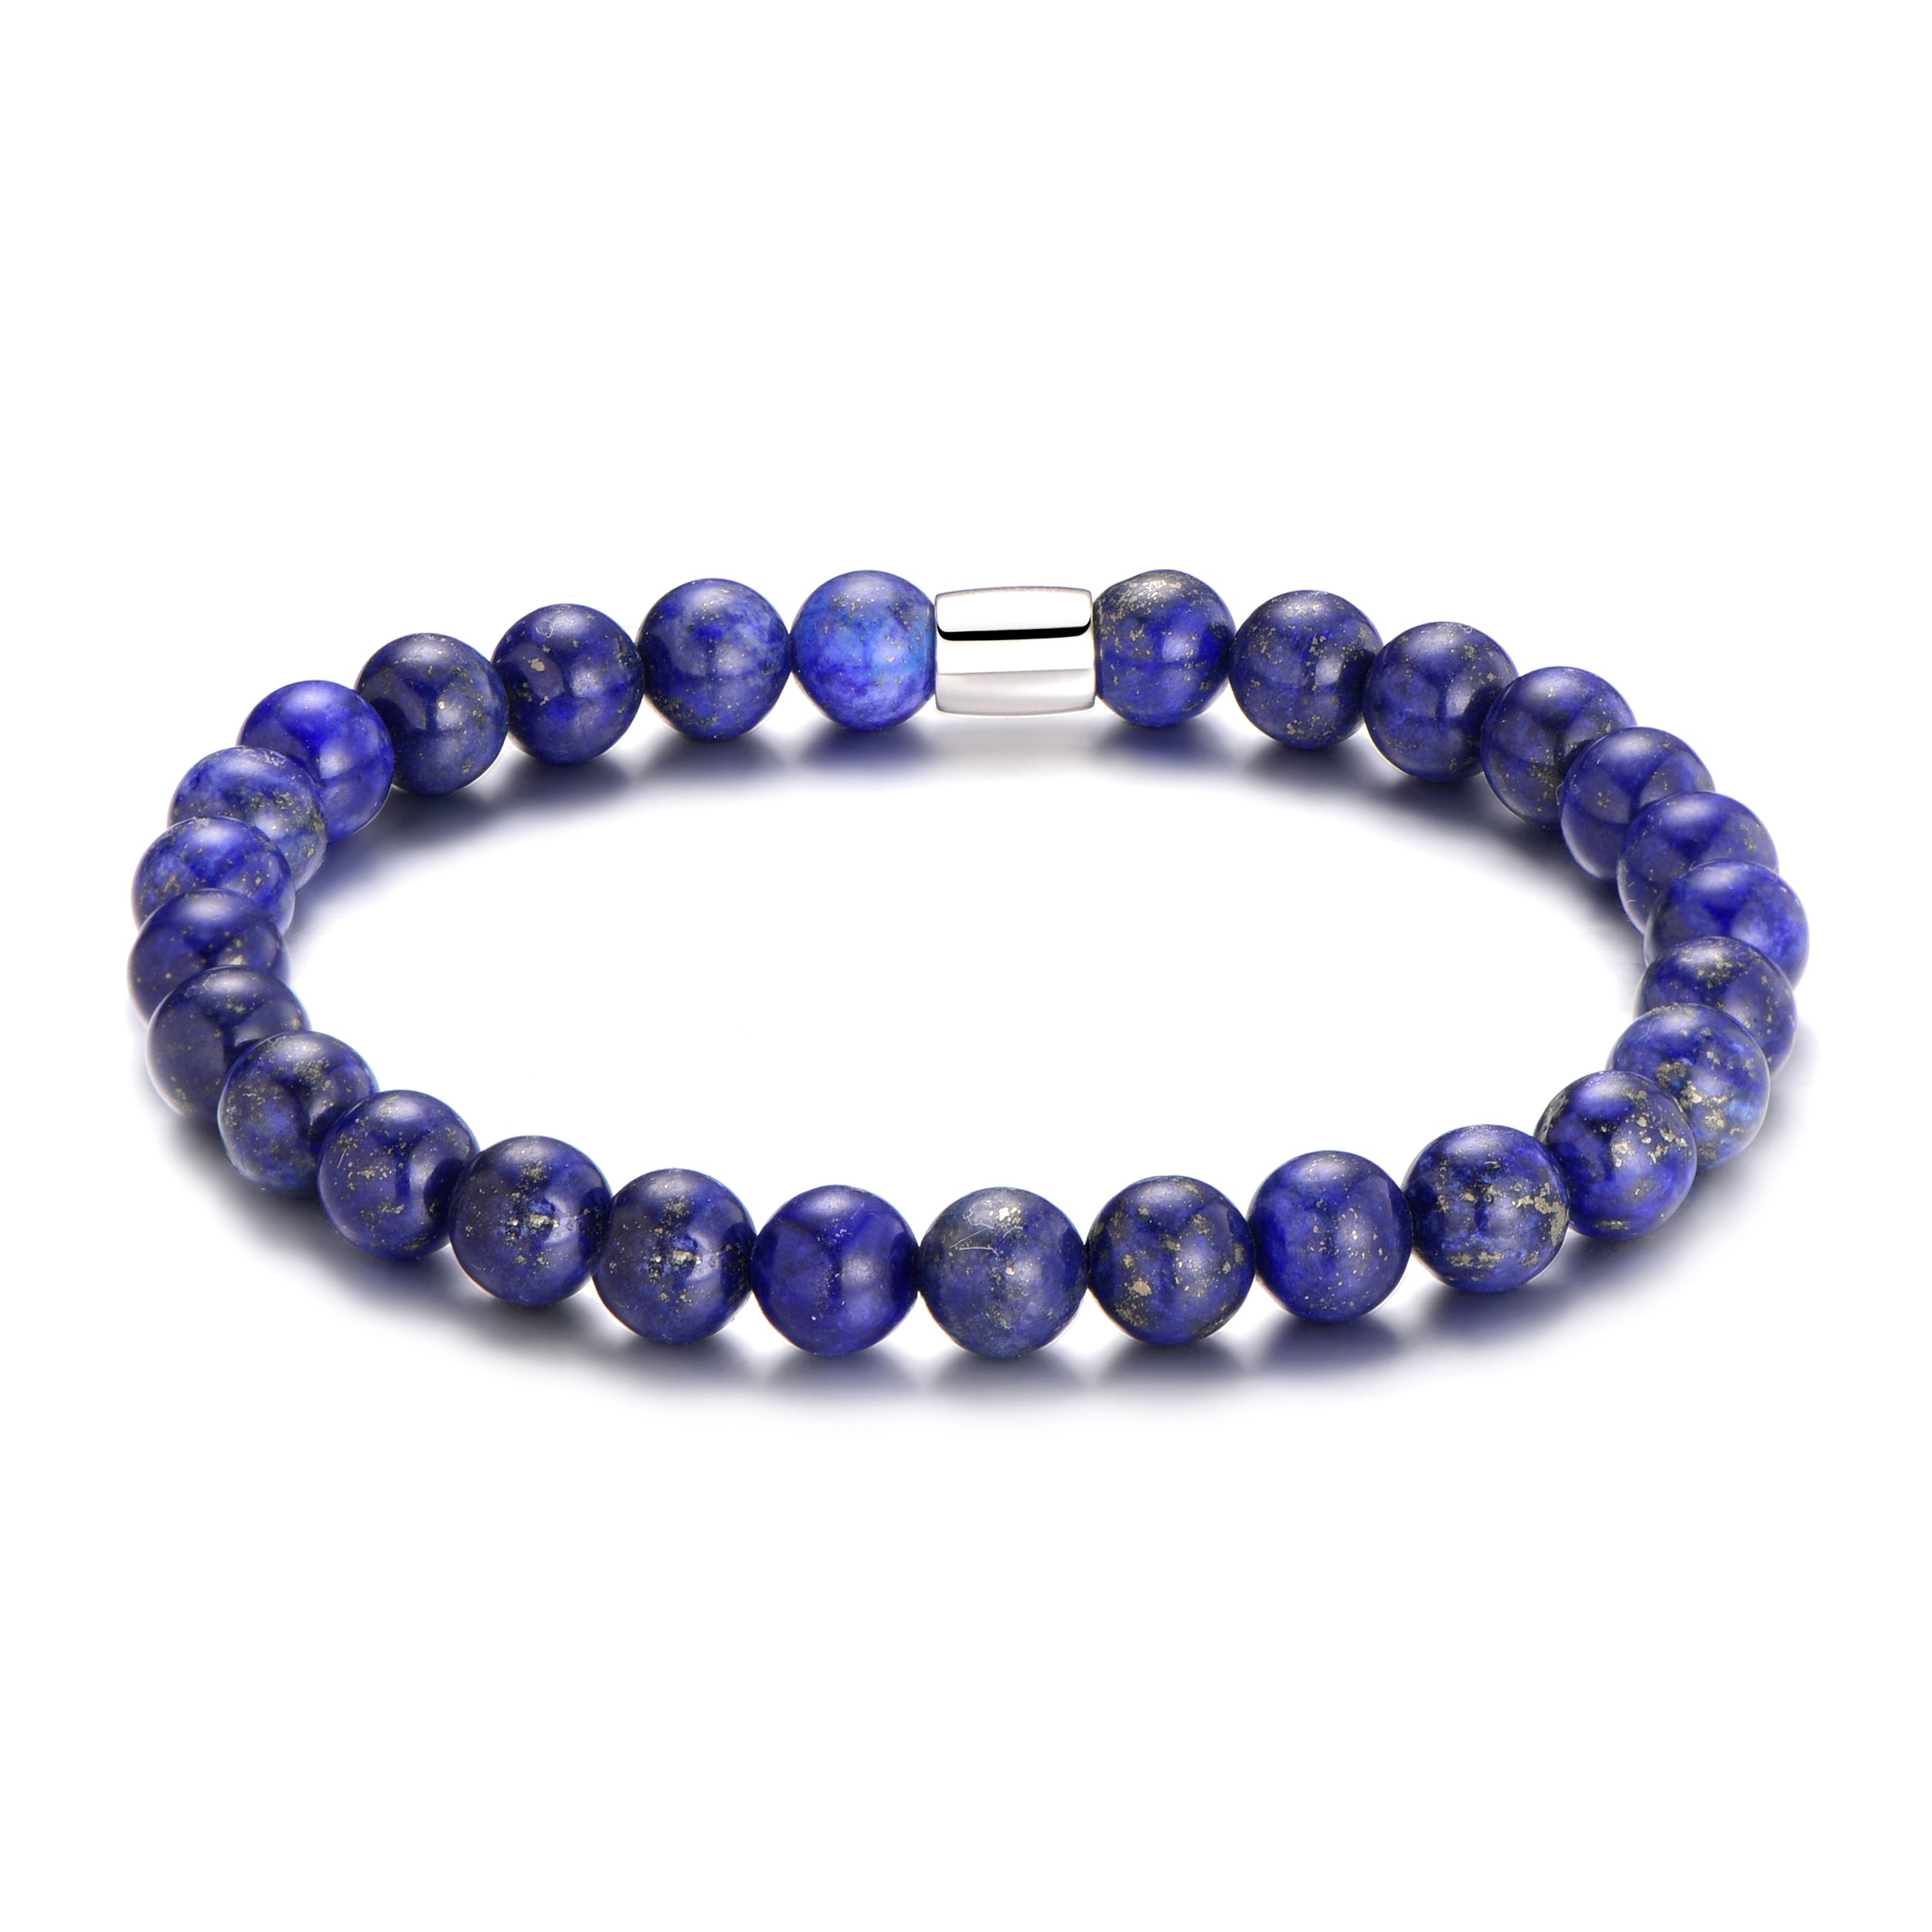 Lapis Lazuli Gemstone Stretch Bracelet by Philip Jones Jewellery